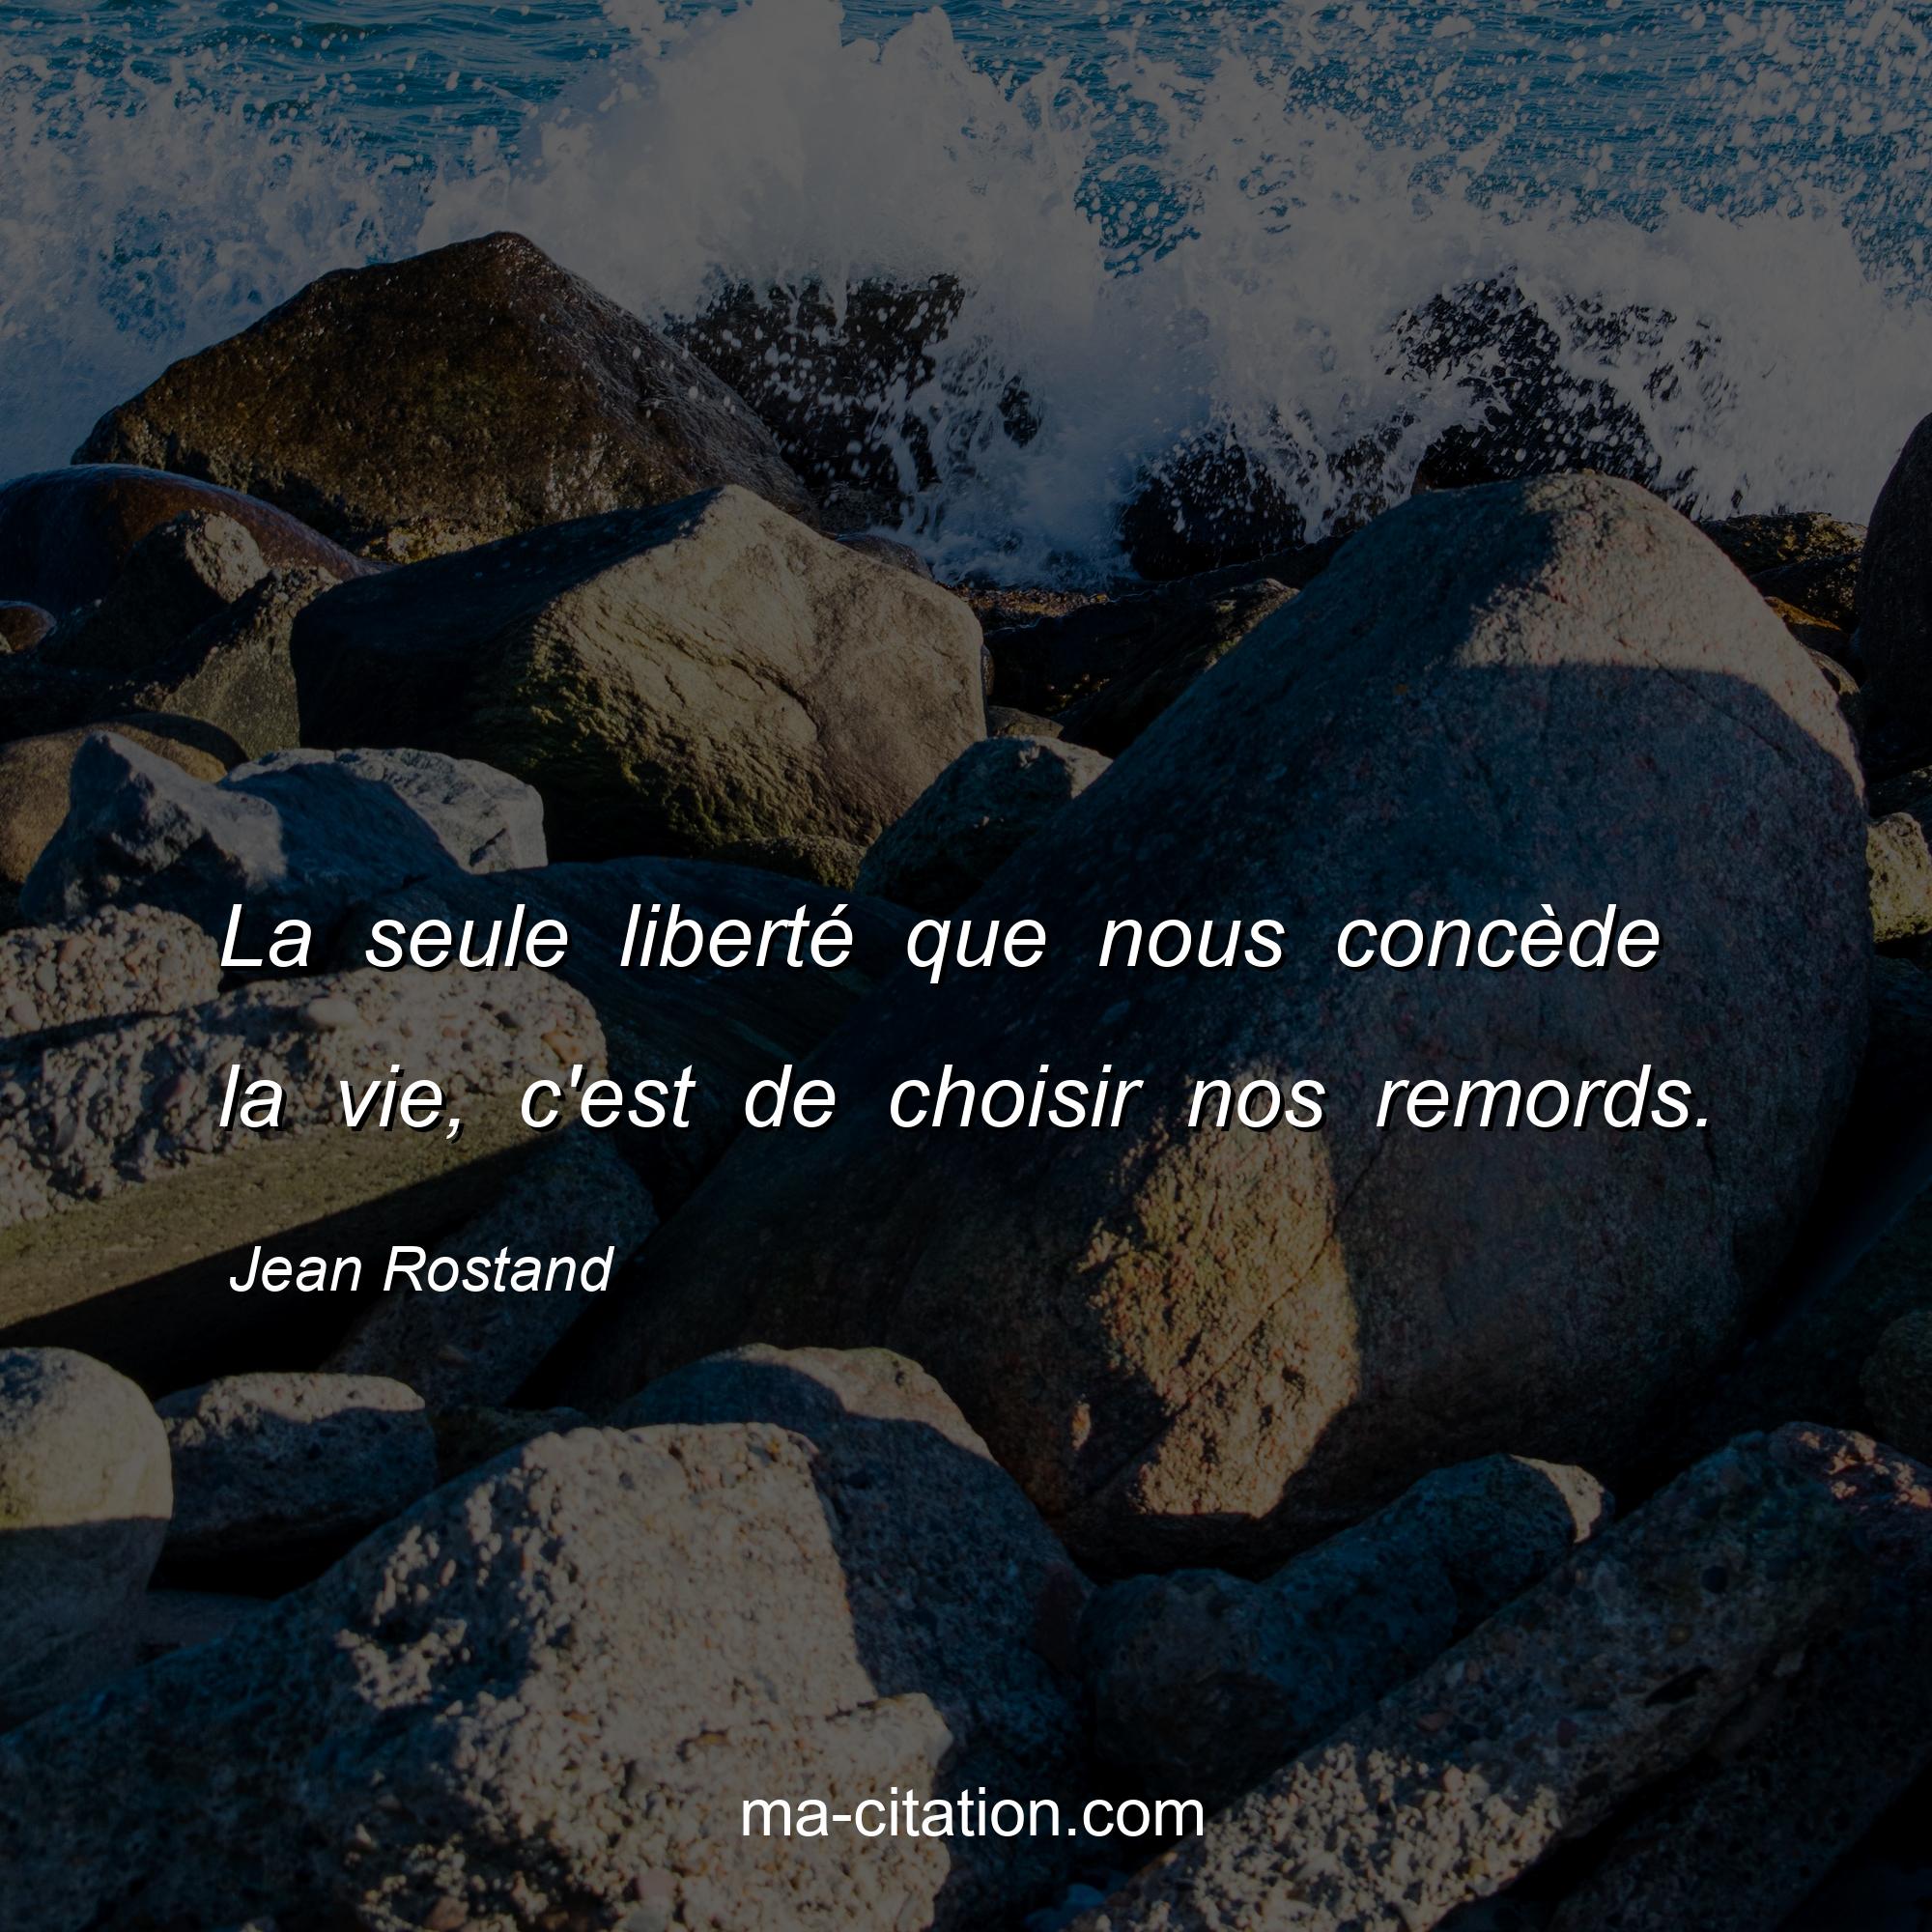 Jean Rostand : La seule liberté que nous concède la vie, c'est de choisir nos remords.